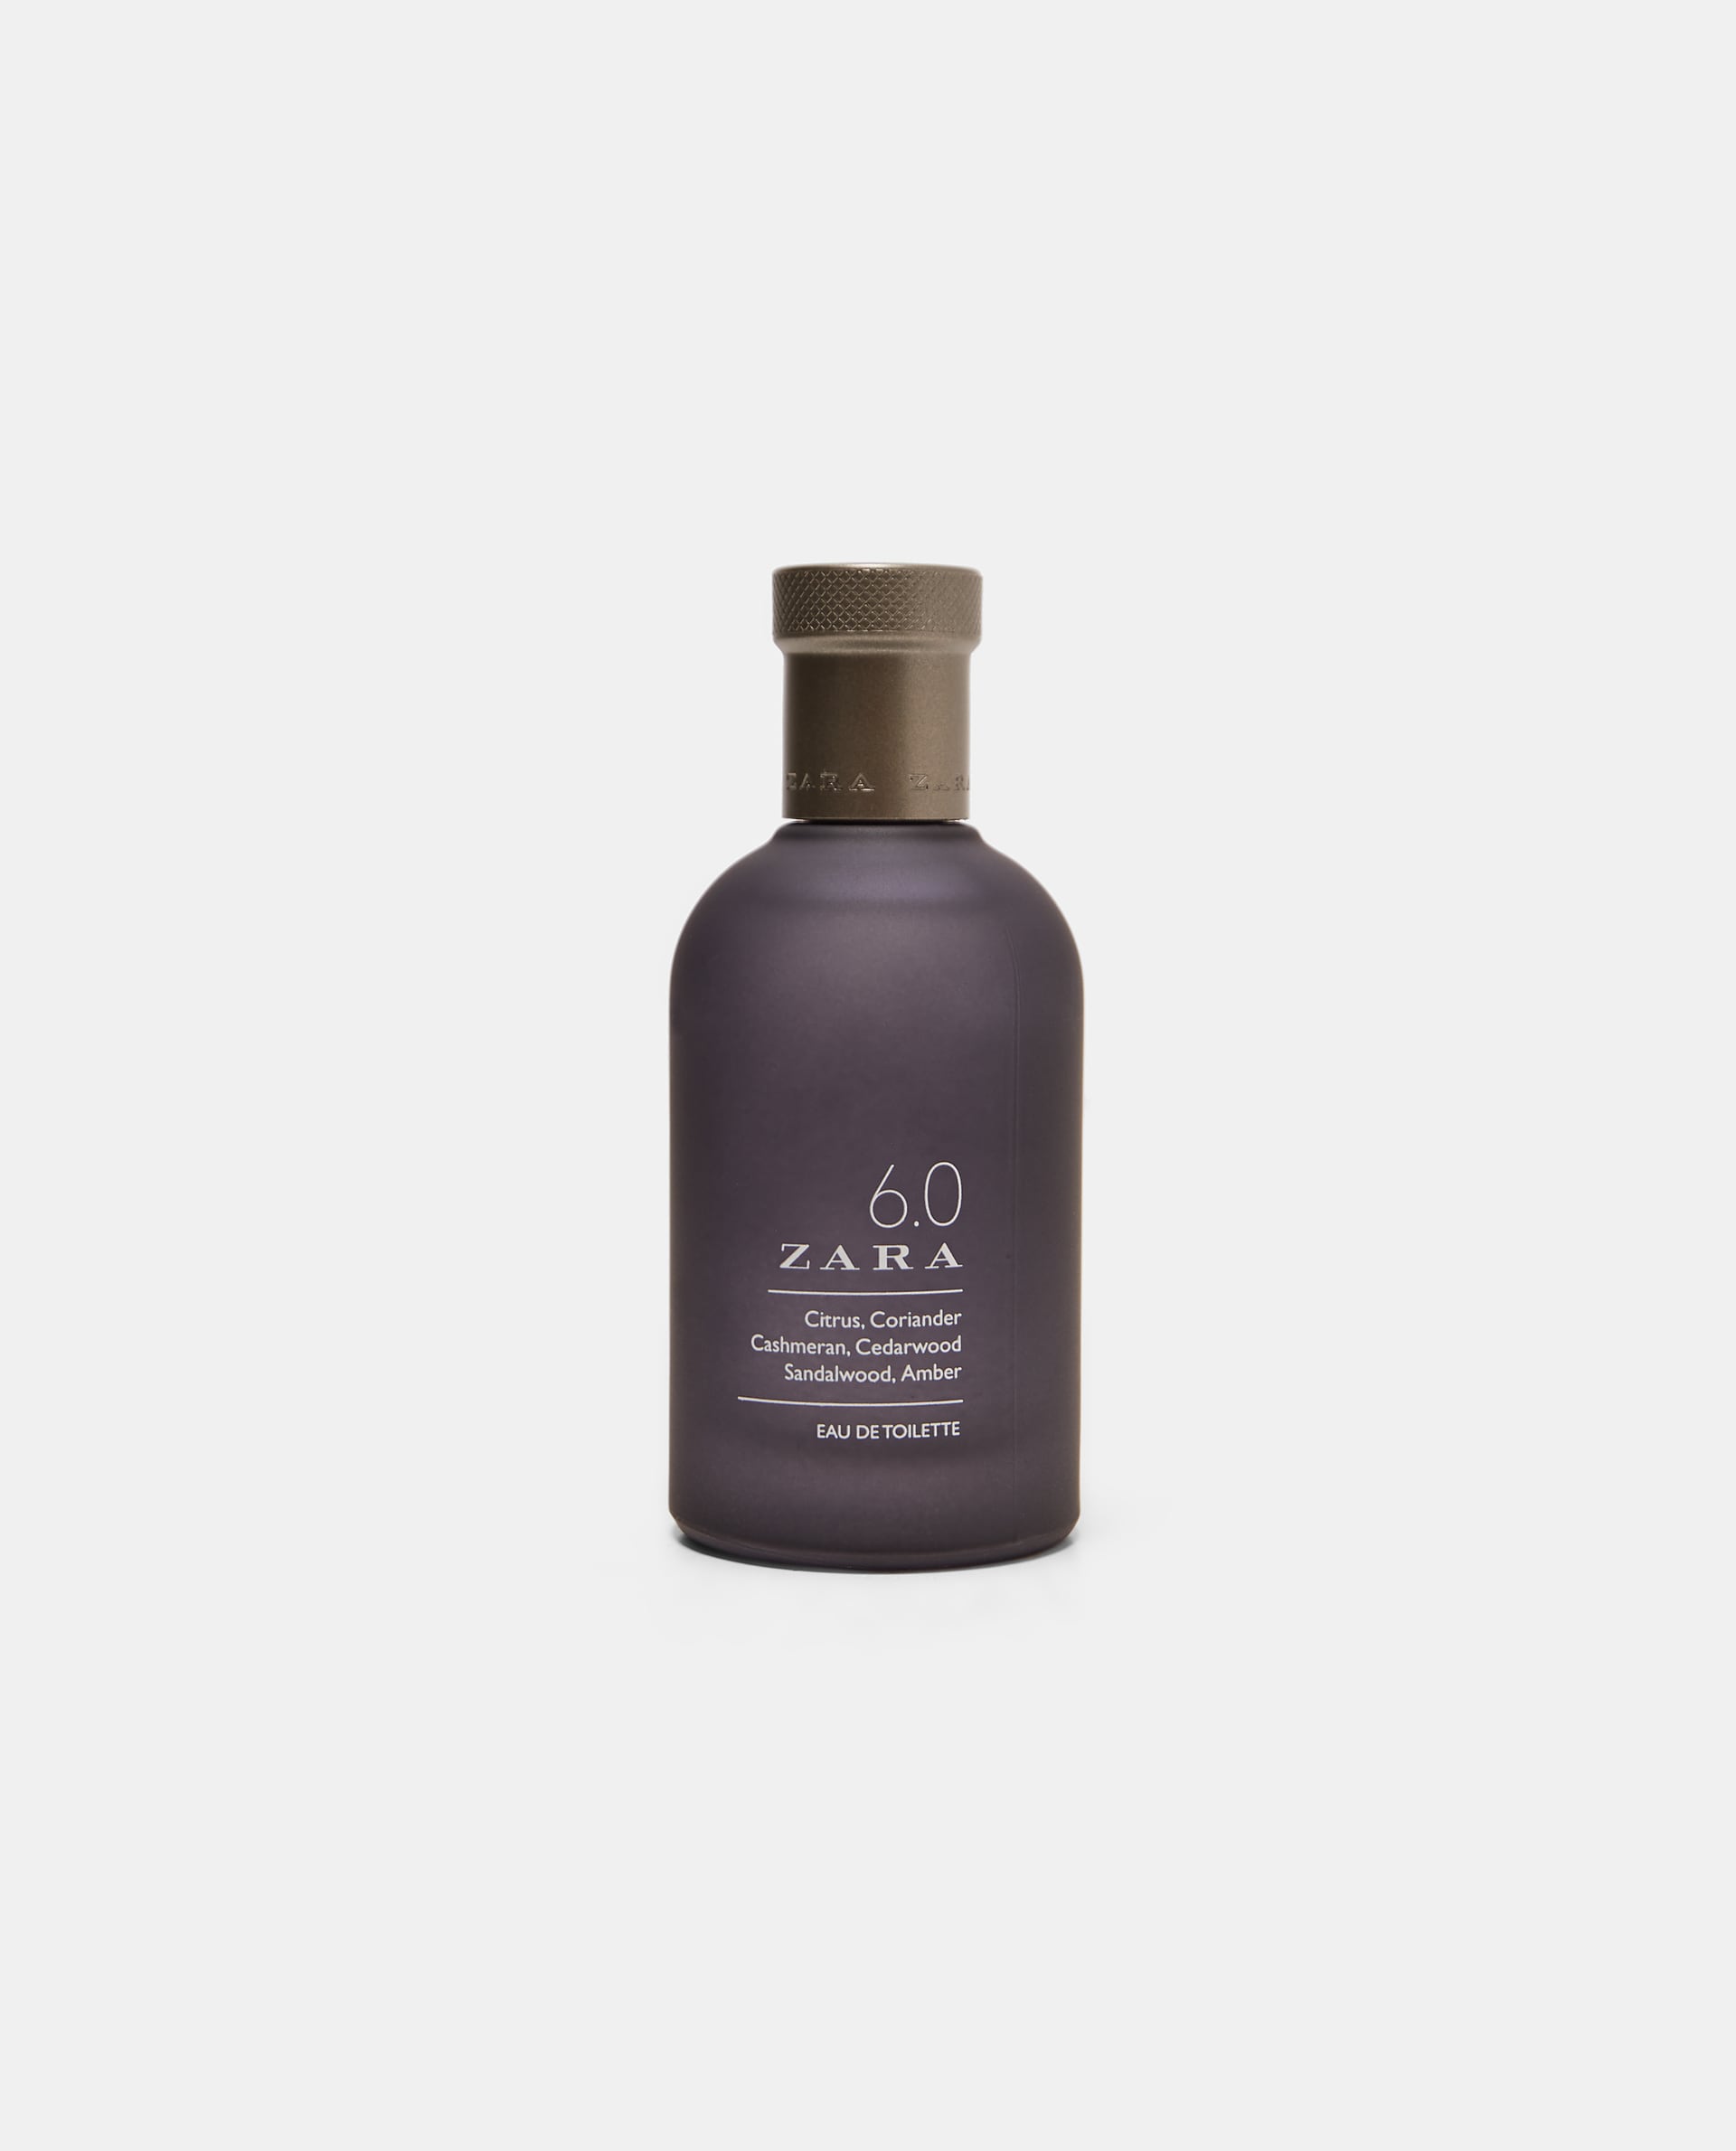 6.0 Zara Zara cologne - a fragrance for 